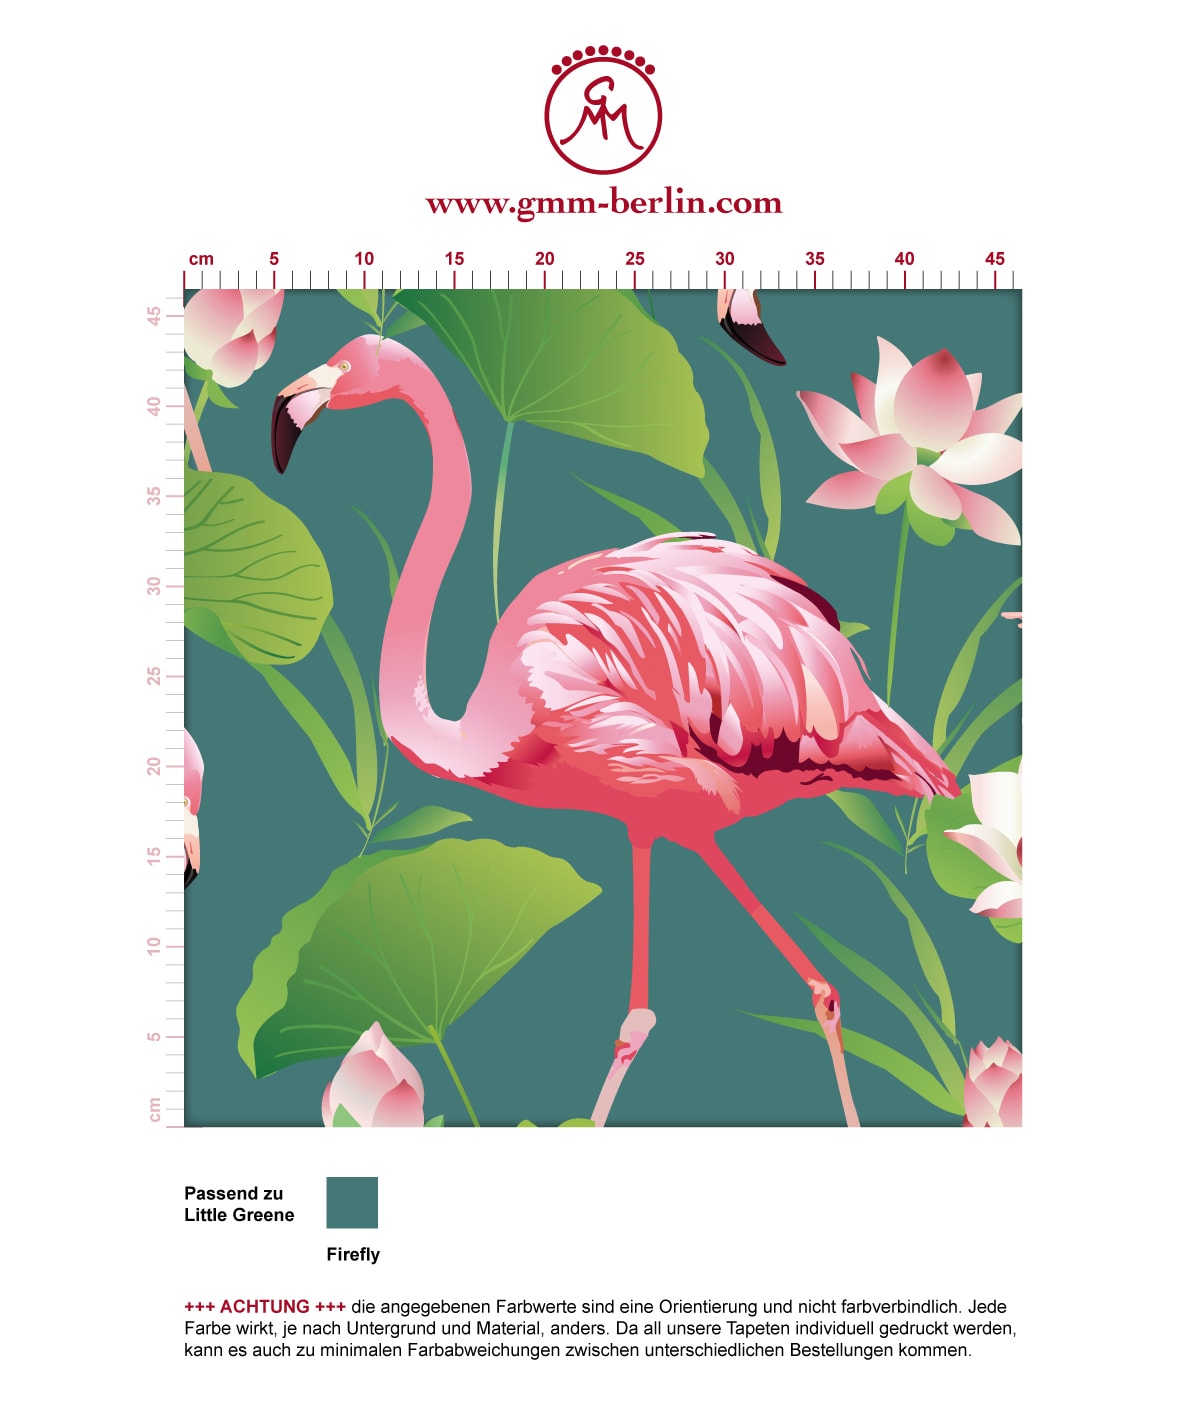 Türkise, extravagante, exotische Tapete "Flamingo Pool" mit Seerosen angepasst an Little Greene Wandfarben. Aus dem GMM-BERLIN.com Sortiment: Schöne Tapeten in der Farbe: grün blau